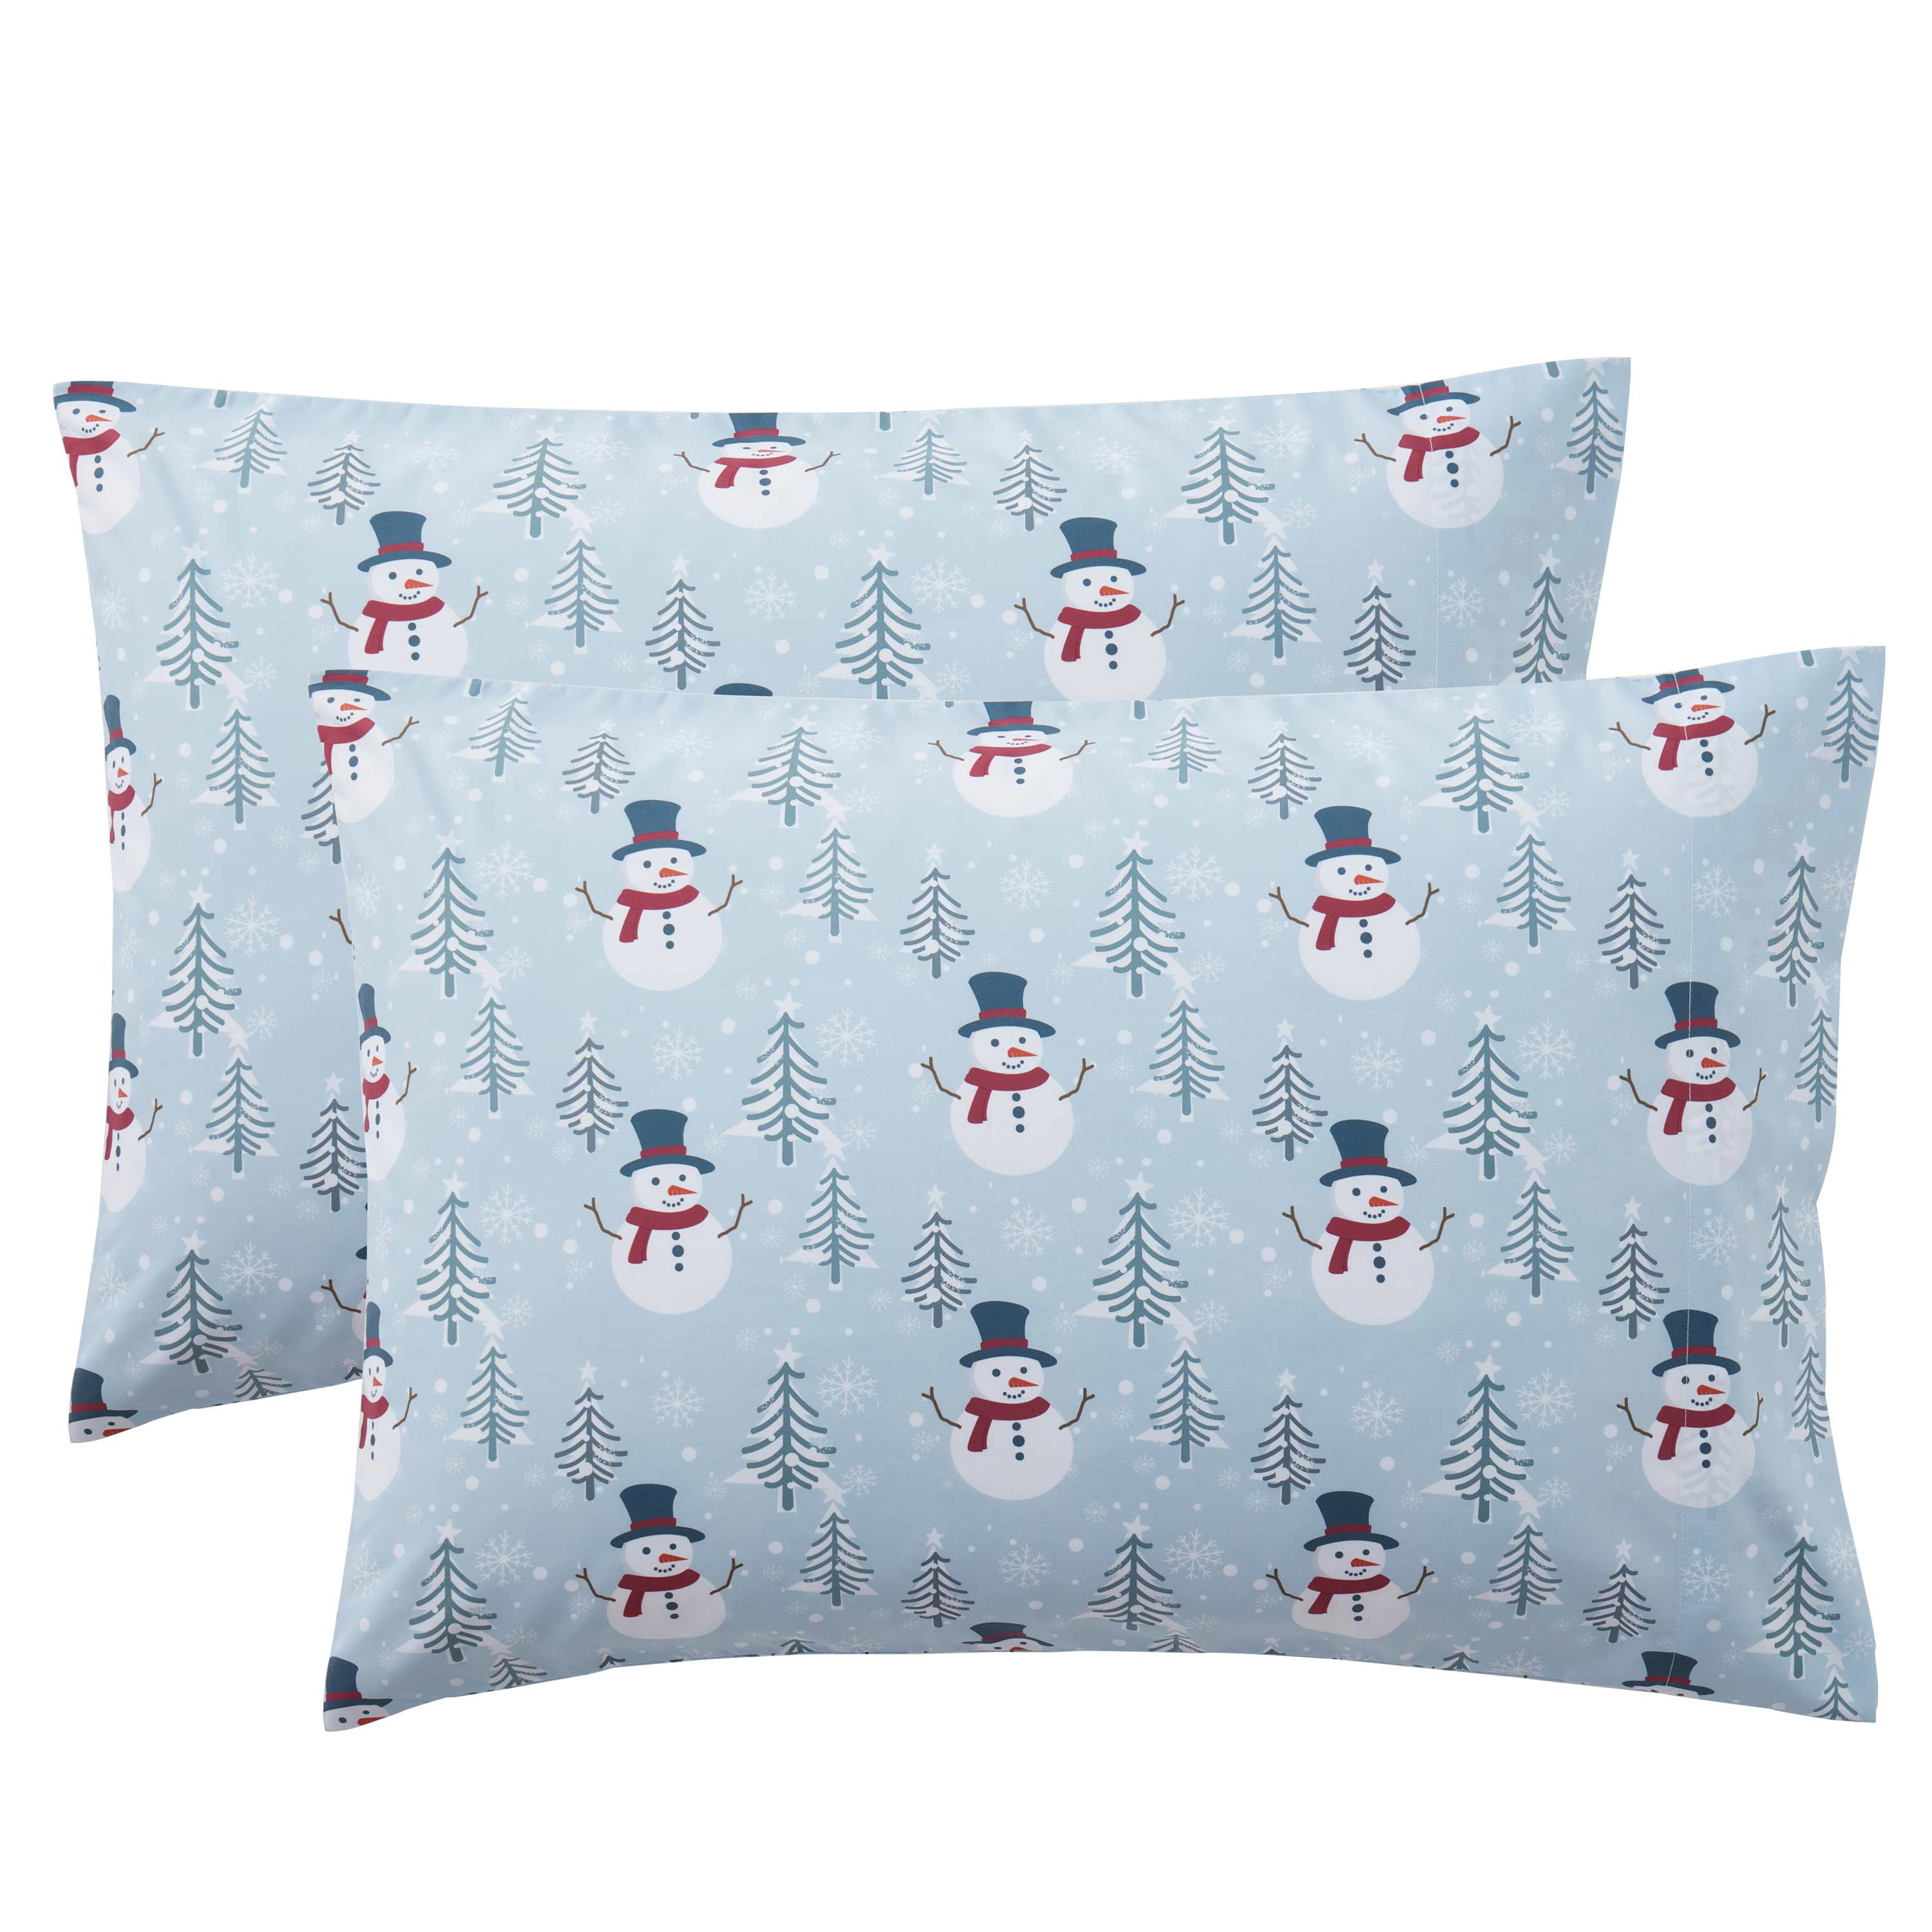 New Christmas Santa Pillow Case Cushion Cover Xmas Home Decor Cotton 72x44cm 